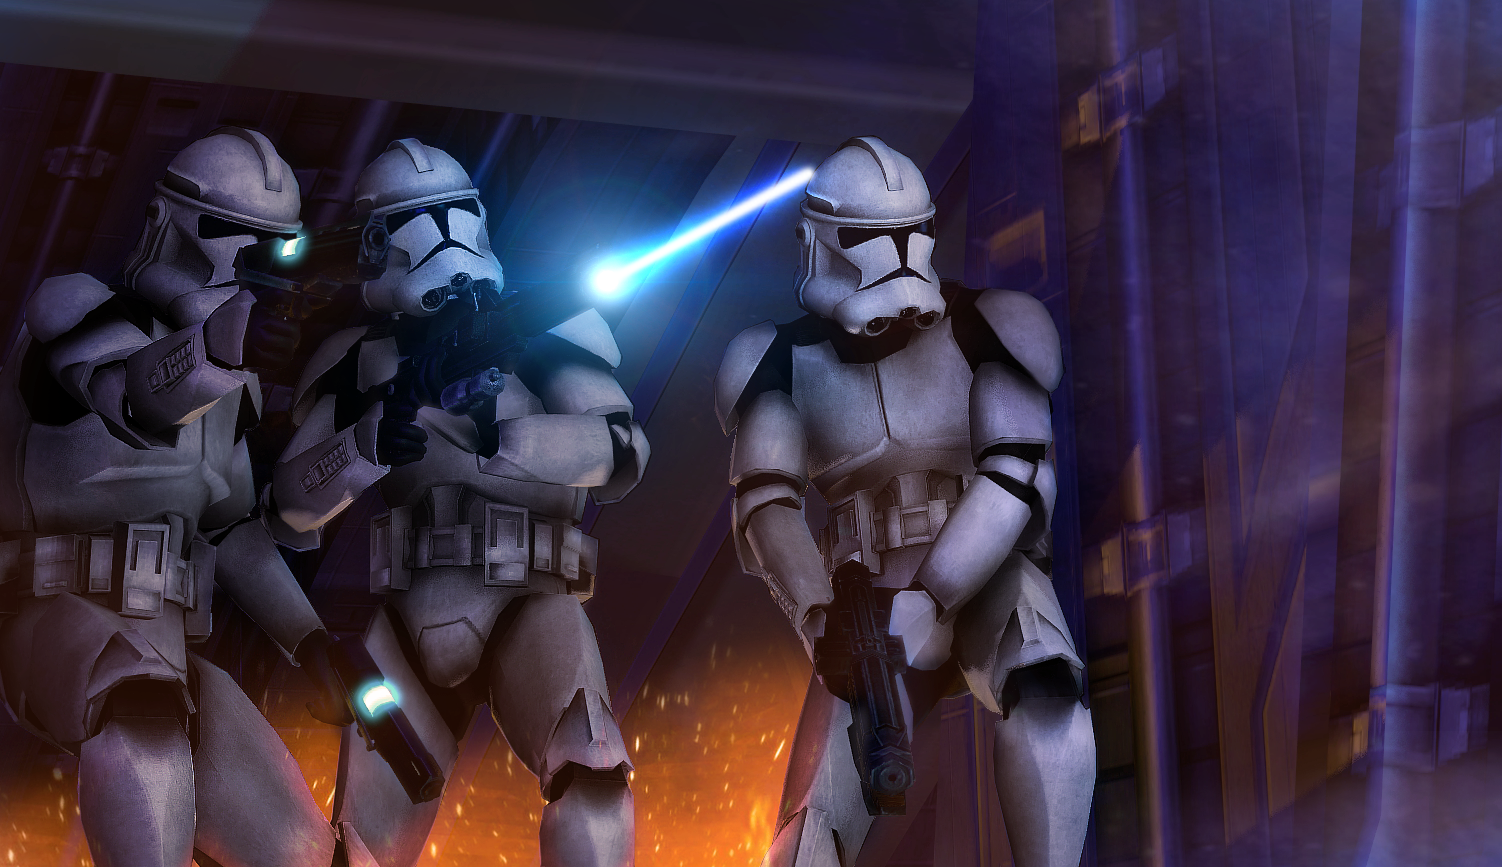 Republic image - Battlefront II strikes back mod for Star Wars Battlefront ...